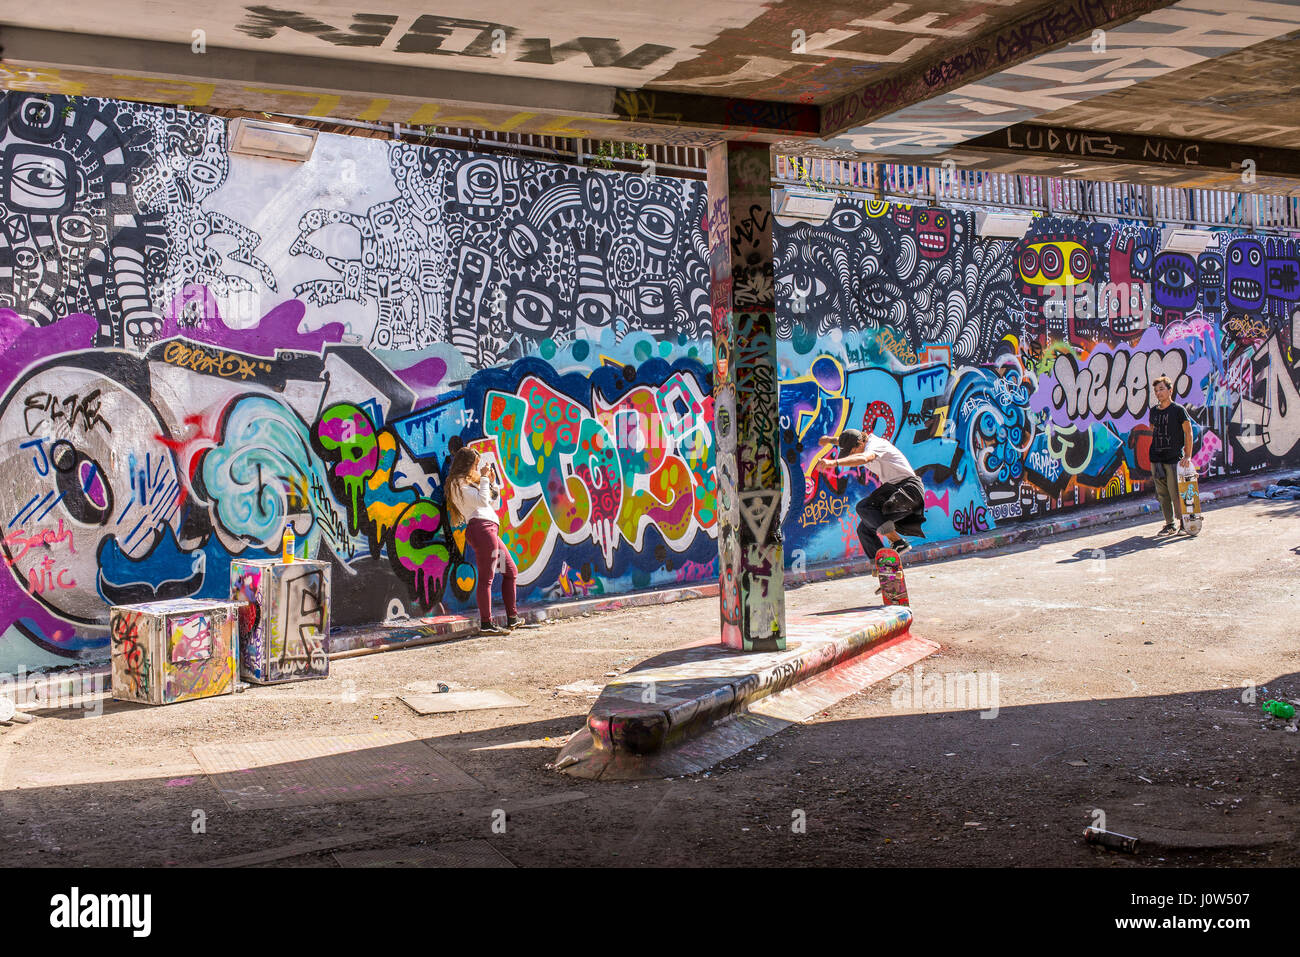 Adolescente skater cavalcare uno skateboard di eseguire un trick in Leake Street tunnel, Londra, Regno Unito. Leake street noto anche come 'Graffiti 'tunnel' o 'Banche Foto Stock